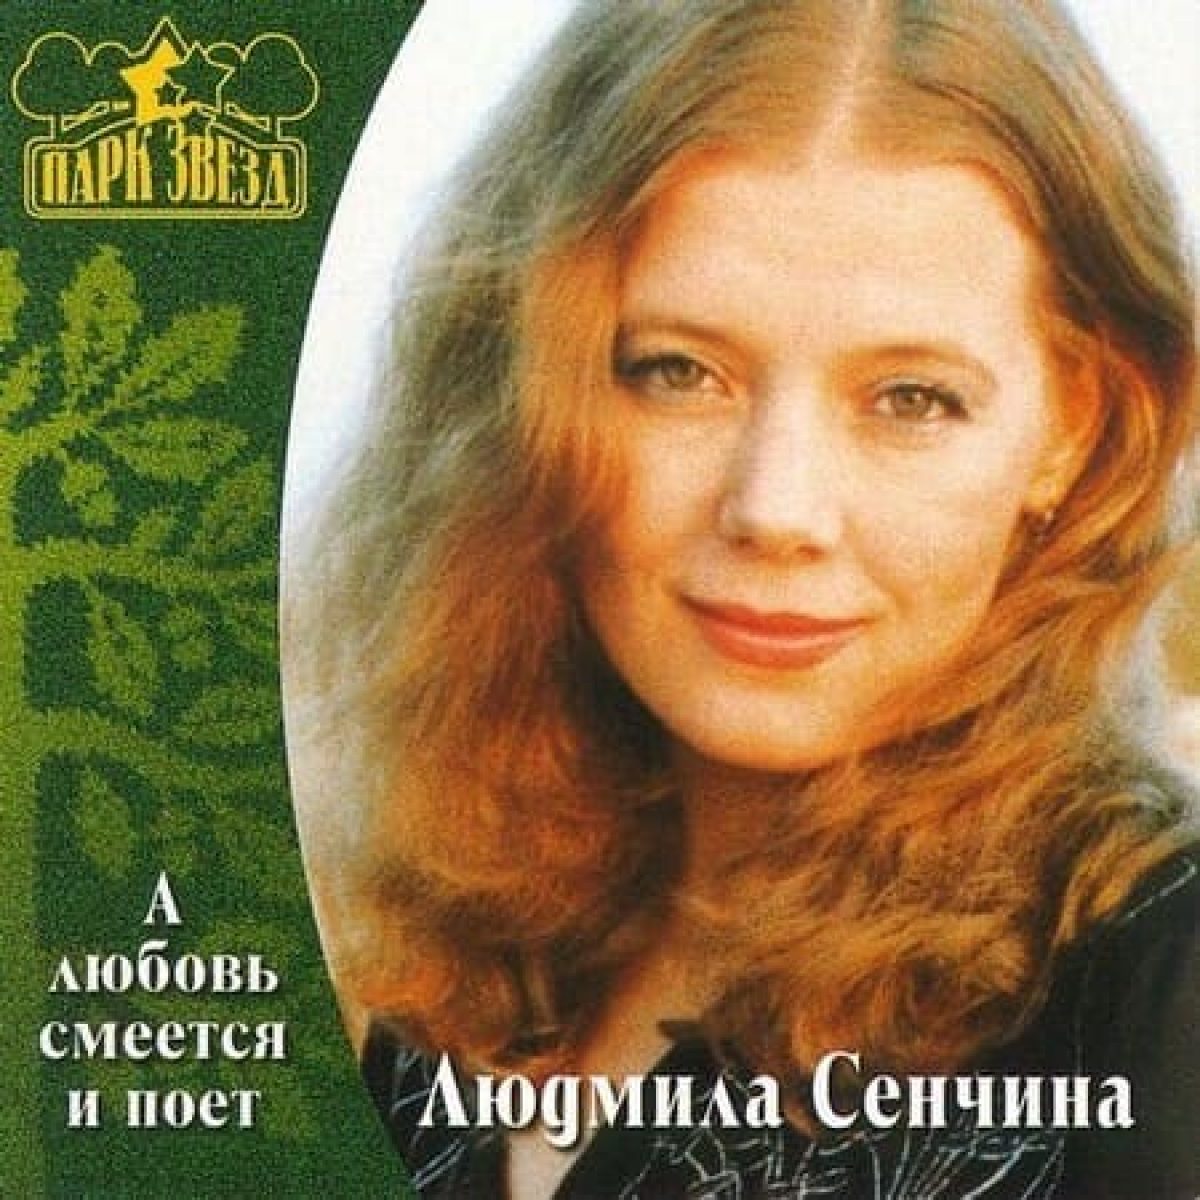 Lyudmila Senchina - День рождения (В музыке только гармония есть) piano sheet music